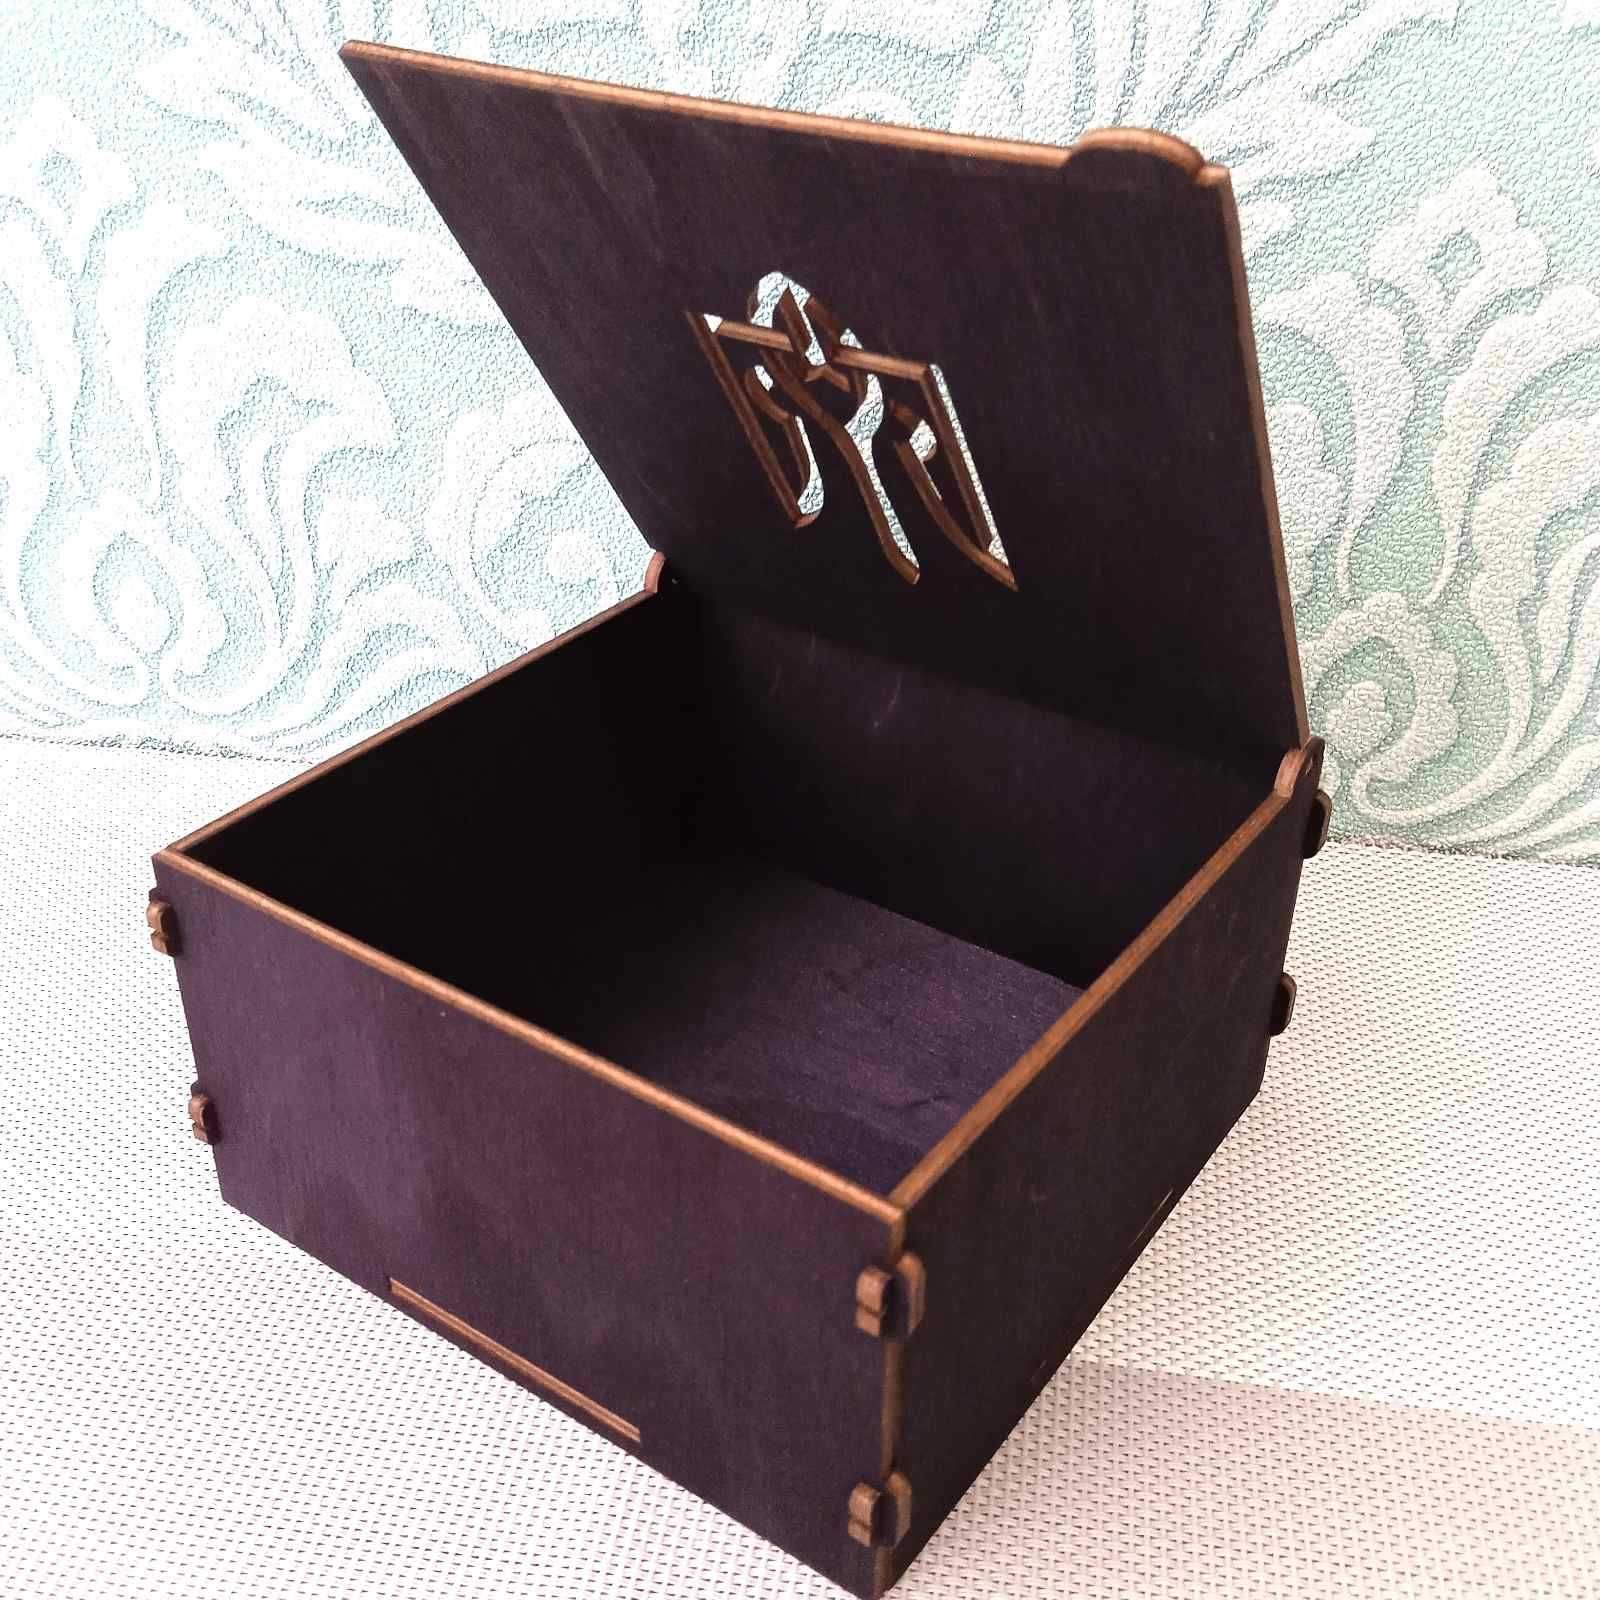 подаруноква коробка деревяна коробочка  з гербом шкатулка